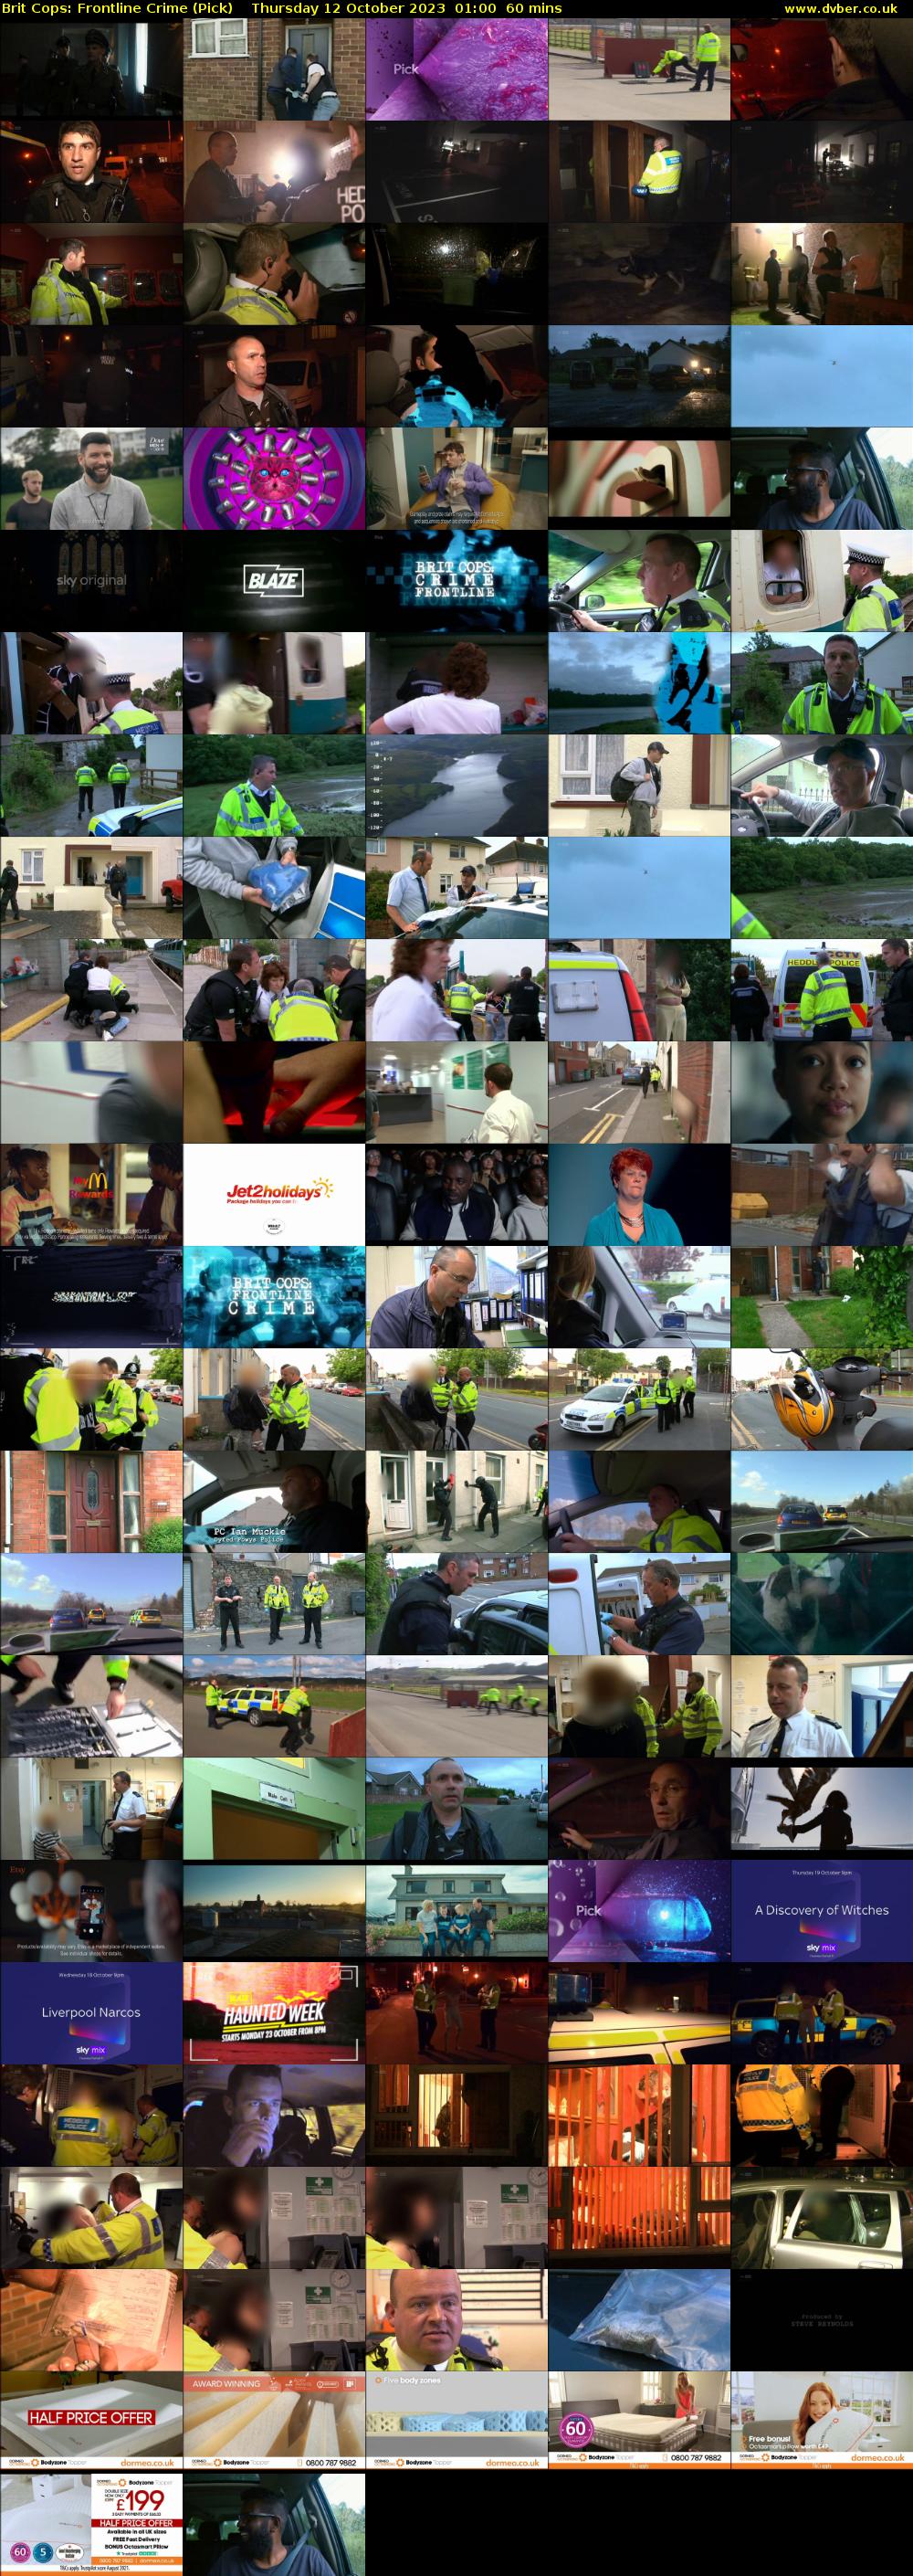 Brit Cops: Frontline Crime (Pick) Thursday 12 October 2023 01:00 - 02:00